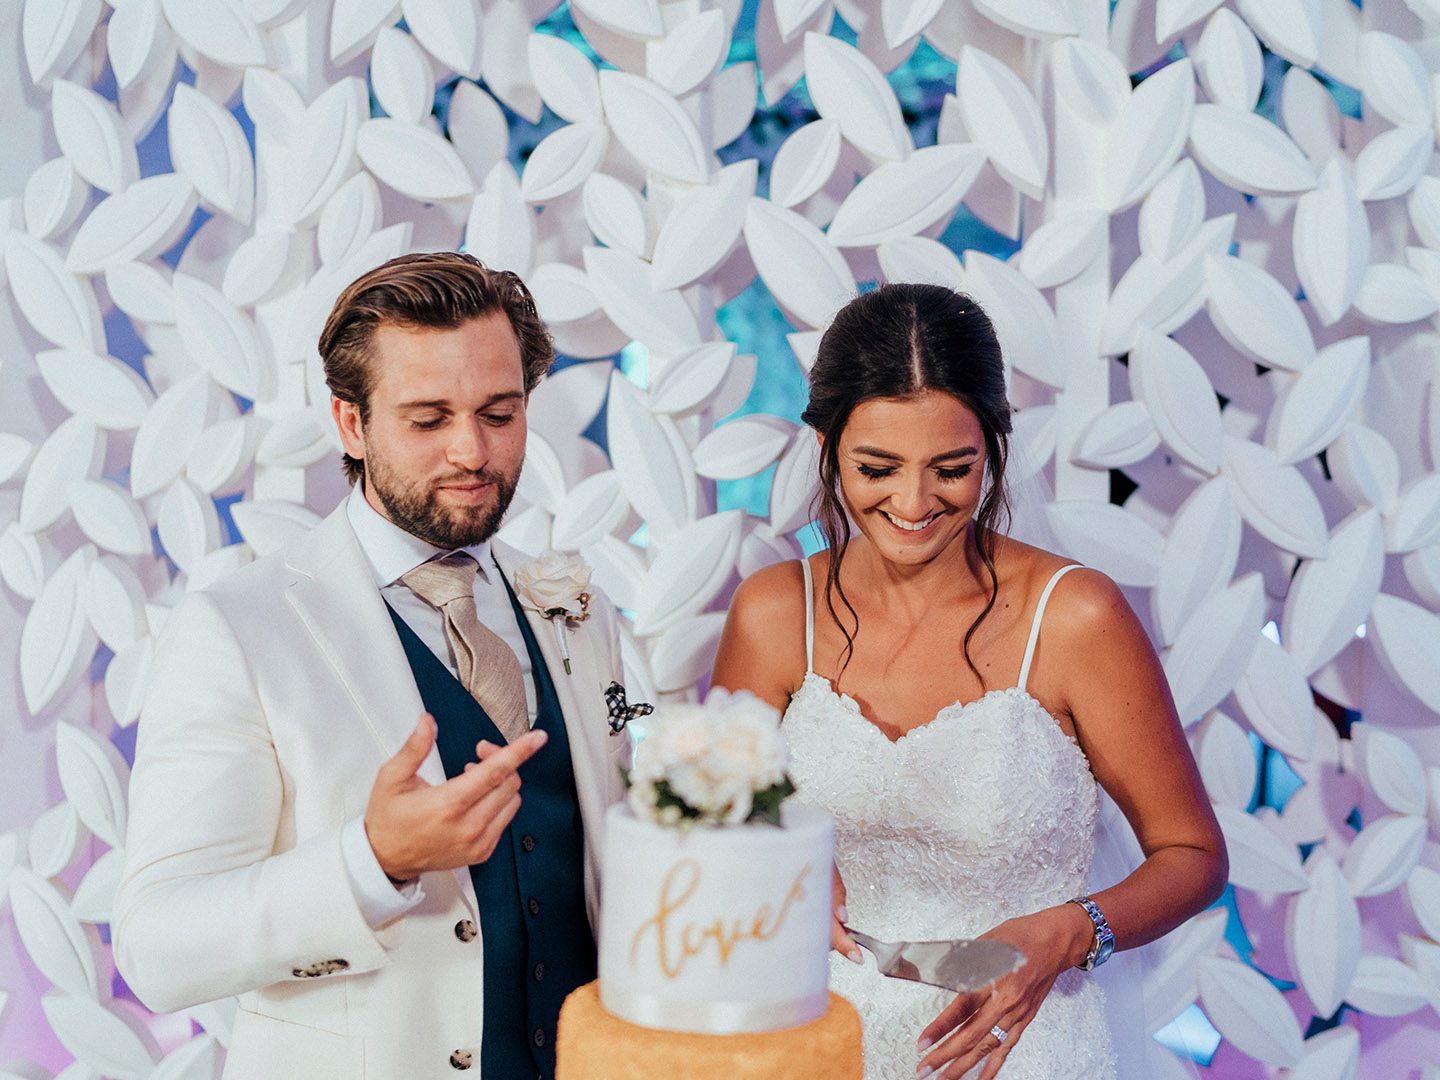 Newlywed couple cutting wedding cake at You & Me Bar at Olympic Lagoon Resorts, Ayia Napa